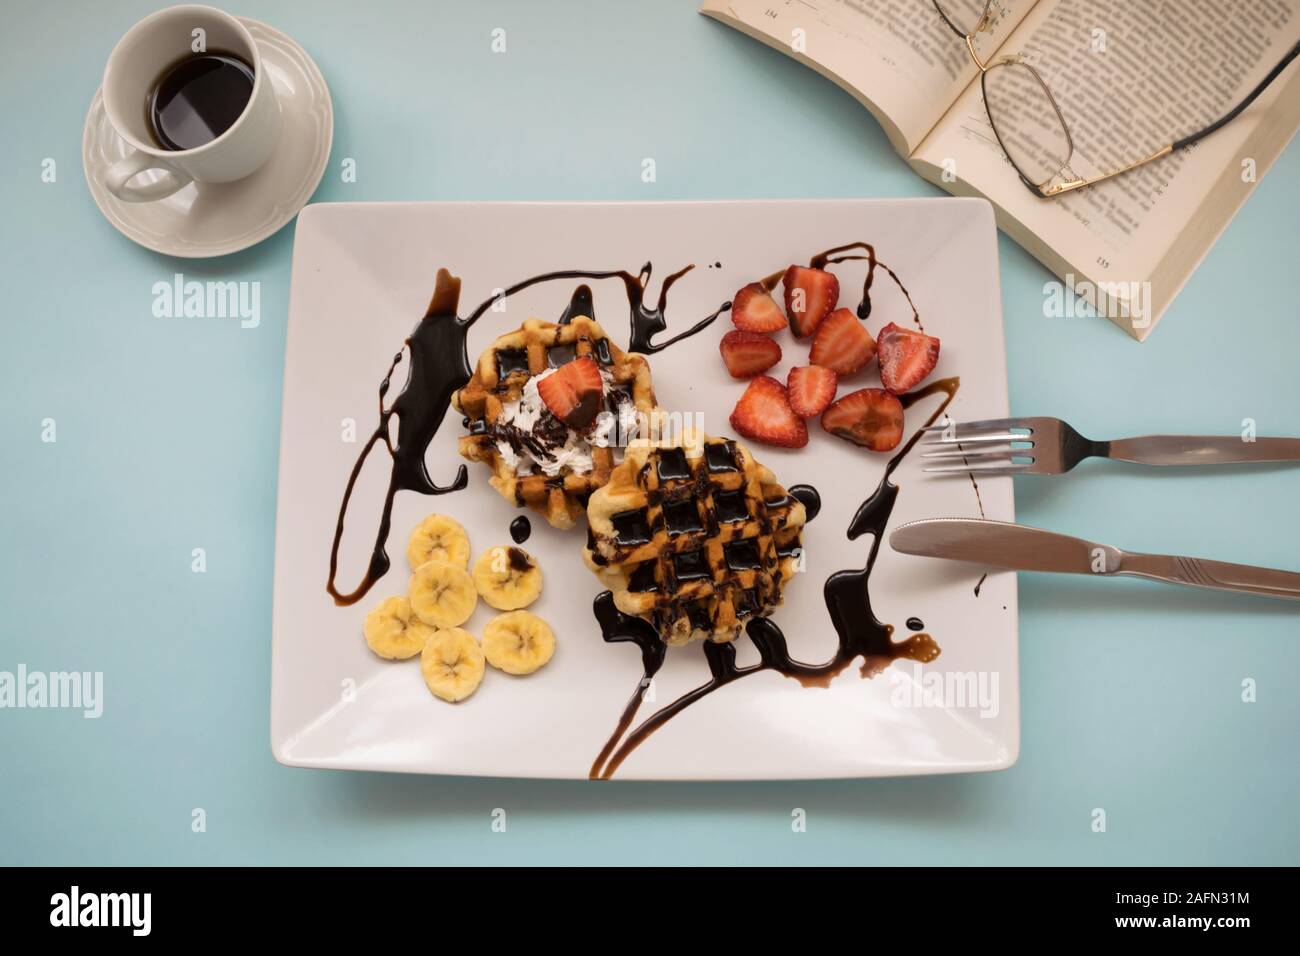 Waffeln mit Schokolade, Obst, eine Tasse Kaffee und ein Buch auf einem blauen Hintergrund Stockfoto